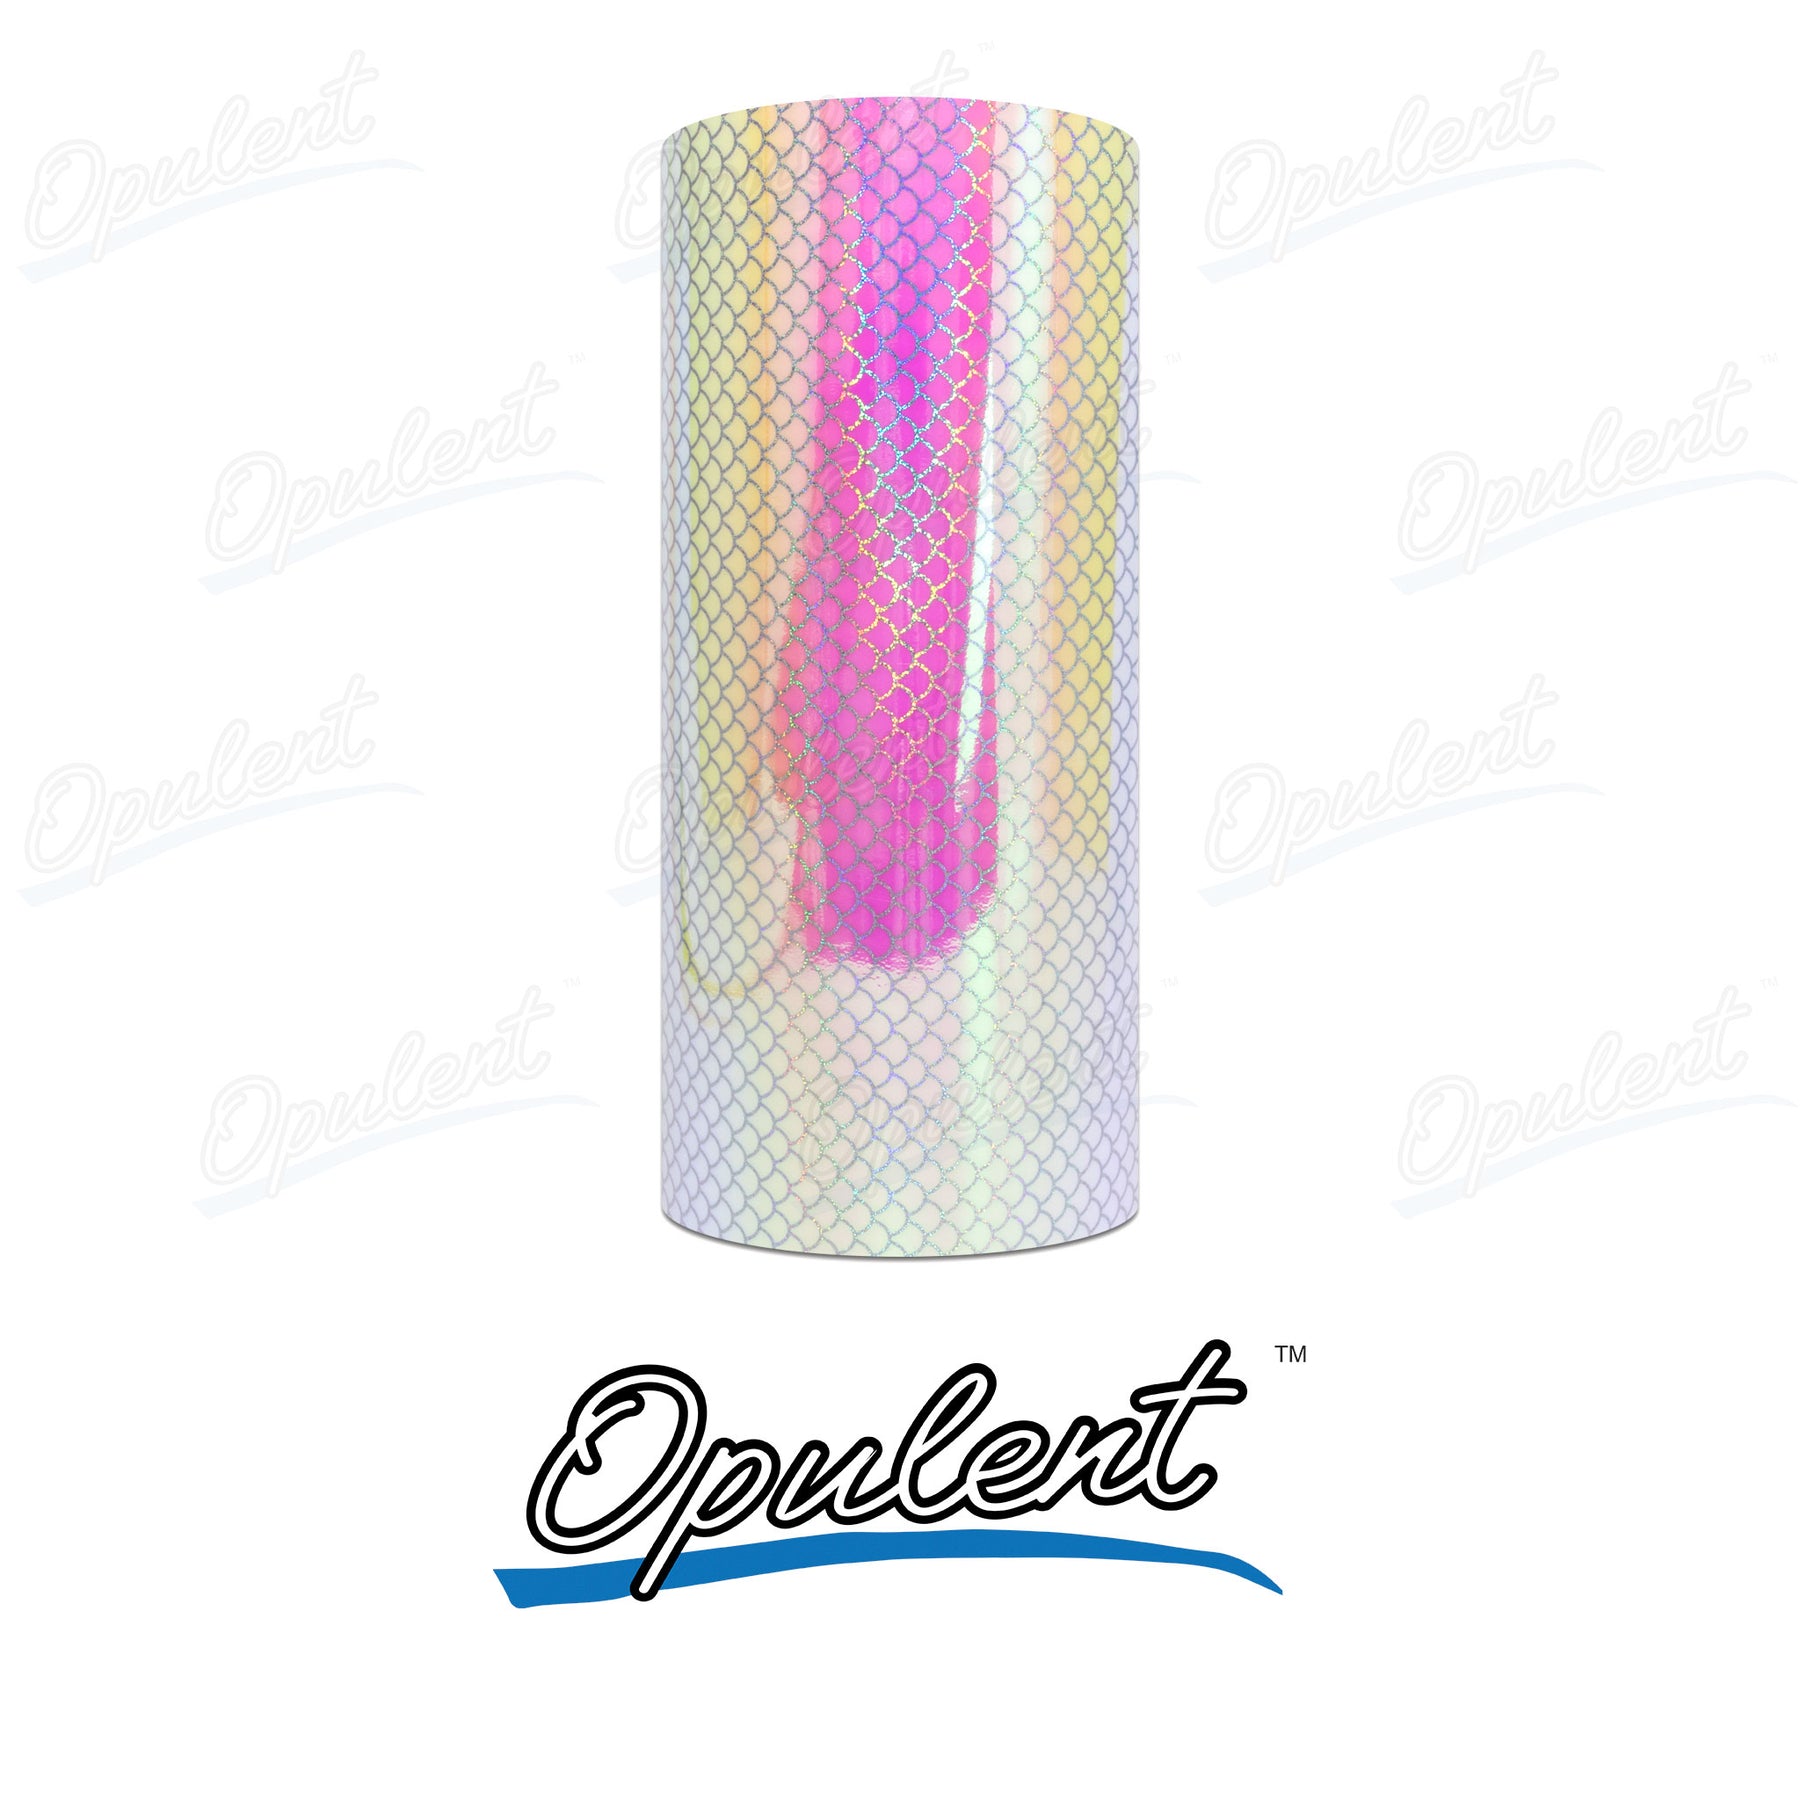 Opulent® Sunset Permanent Adhesive - 30.5cm x 1m